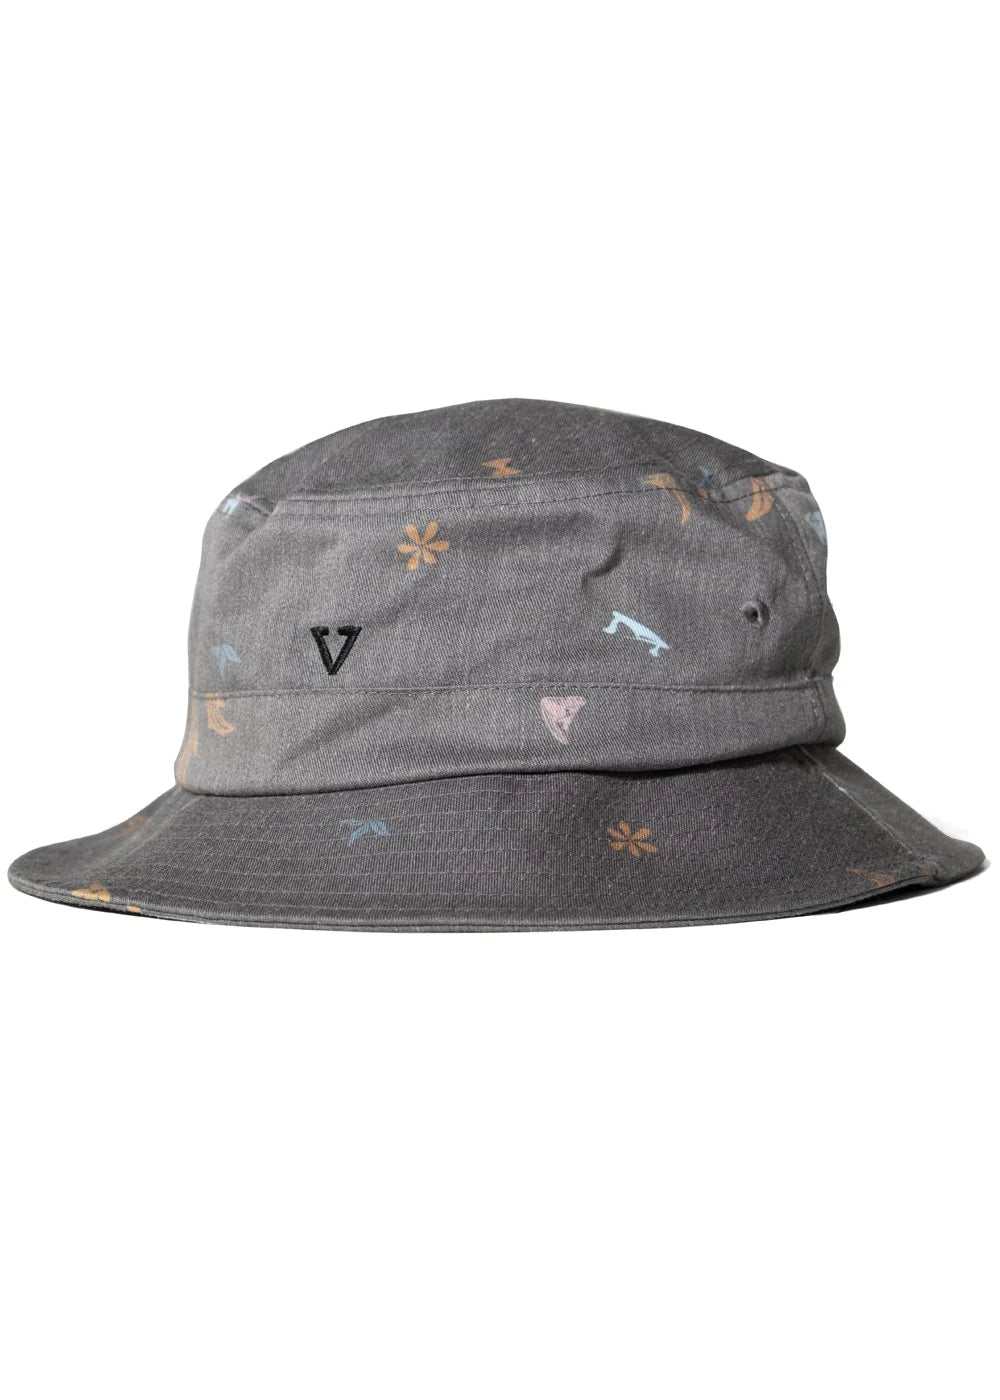 Vissla Mens Miyashiro Island Stargazer Bucket Hat